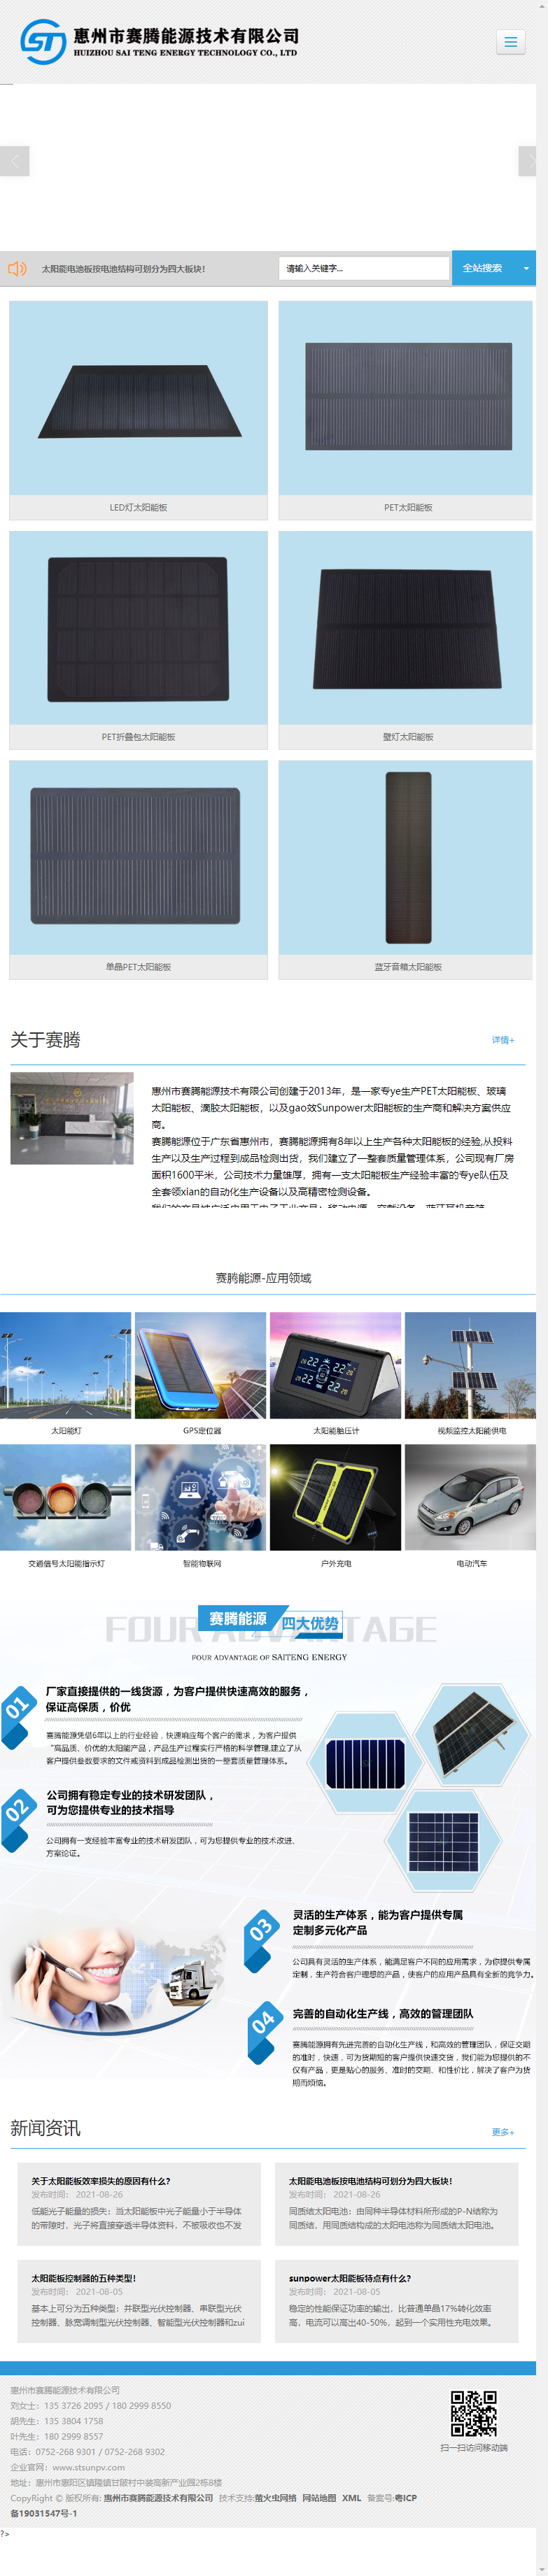 东莞市赛腾能源技术有限公司网站案例